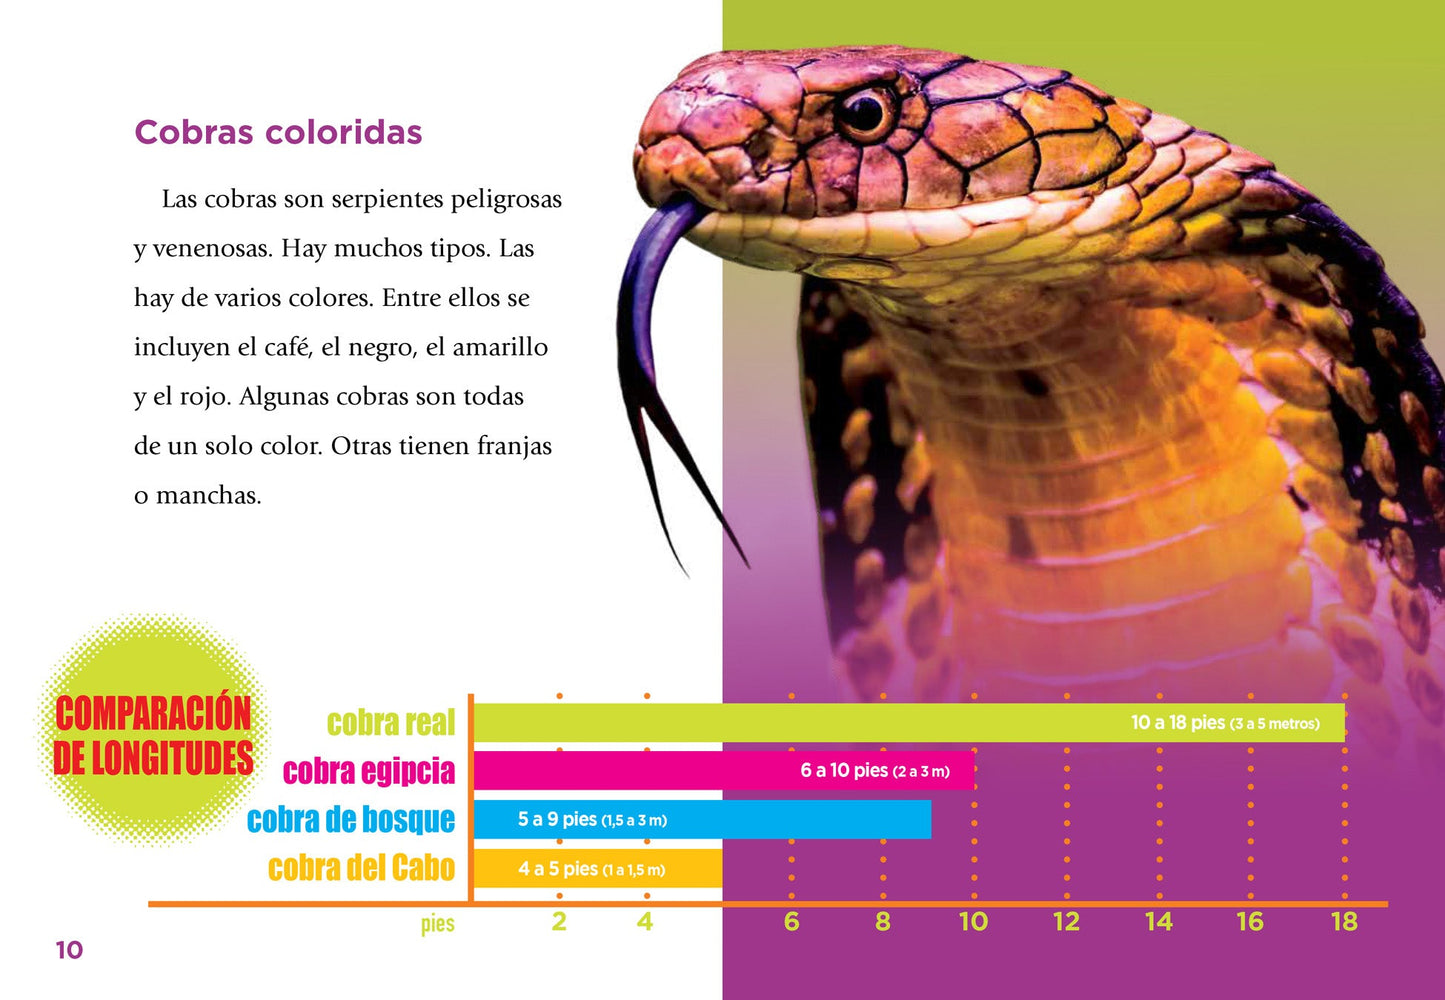 Serpientes escurridizas: Cobras